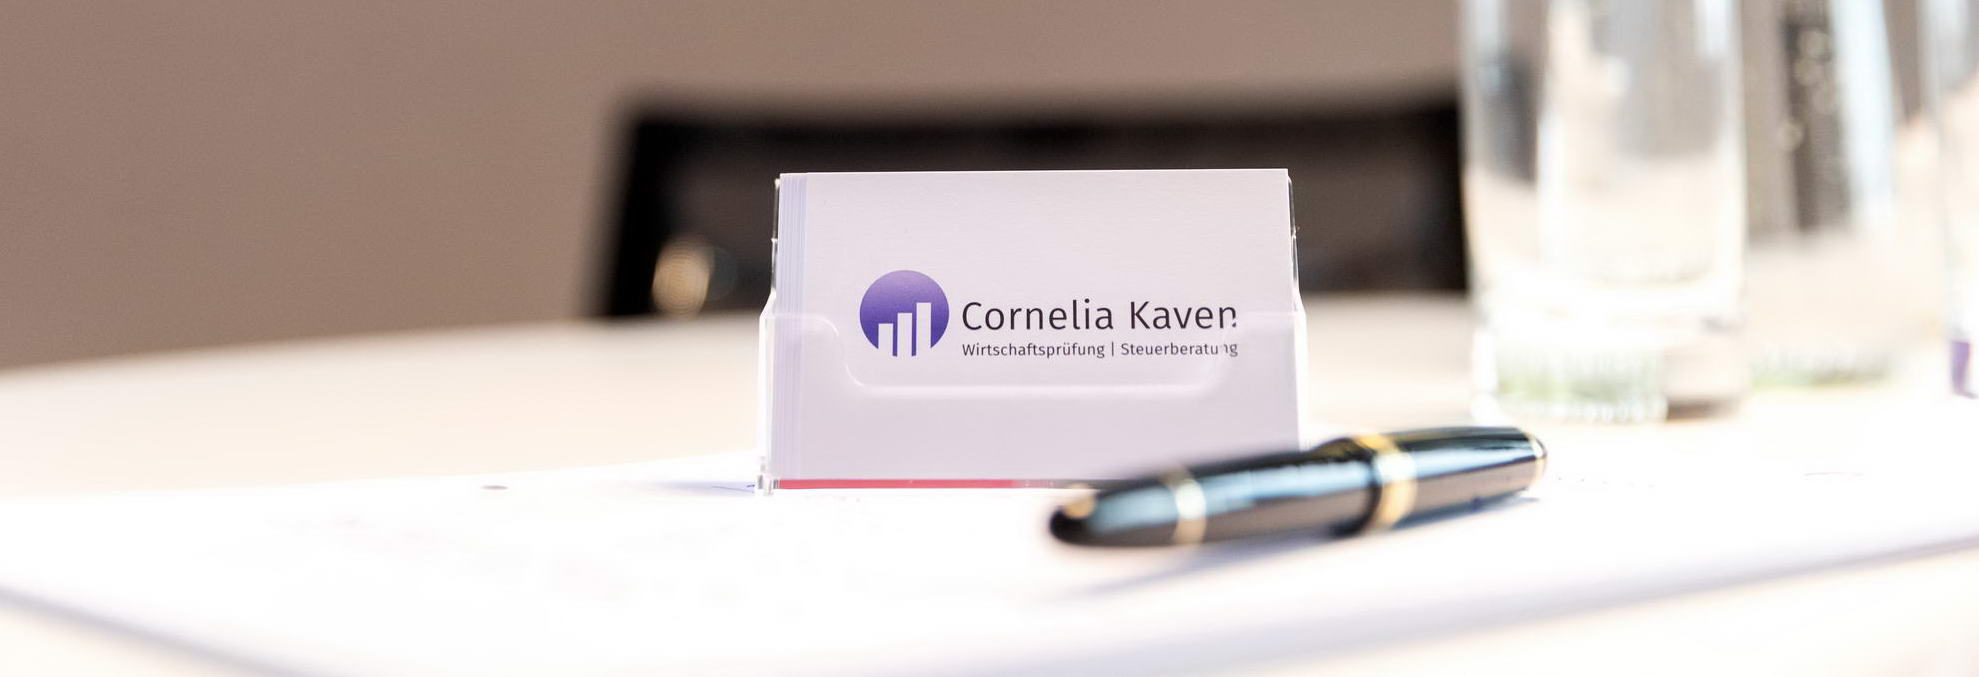 Cornelia Kaven | Datenschutz